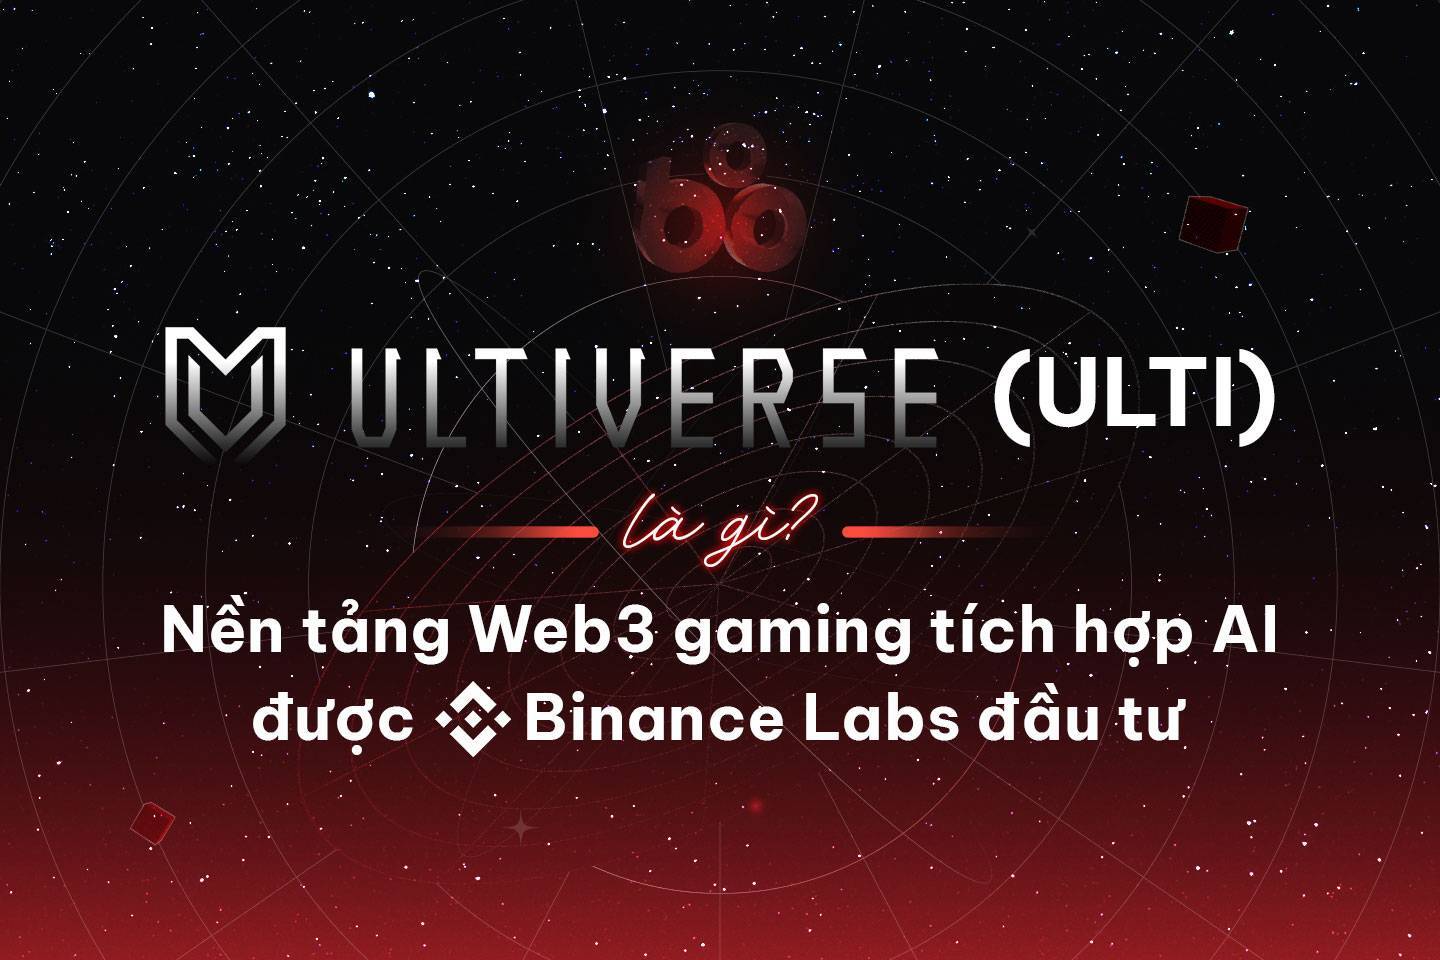 Ultiverse ulti Là Gì Nền Tảng Web3 Gaming Tích Hợp Ai Được Binance Labs Đầu Tư